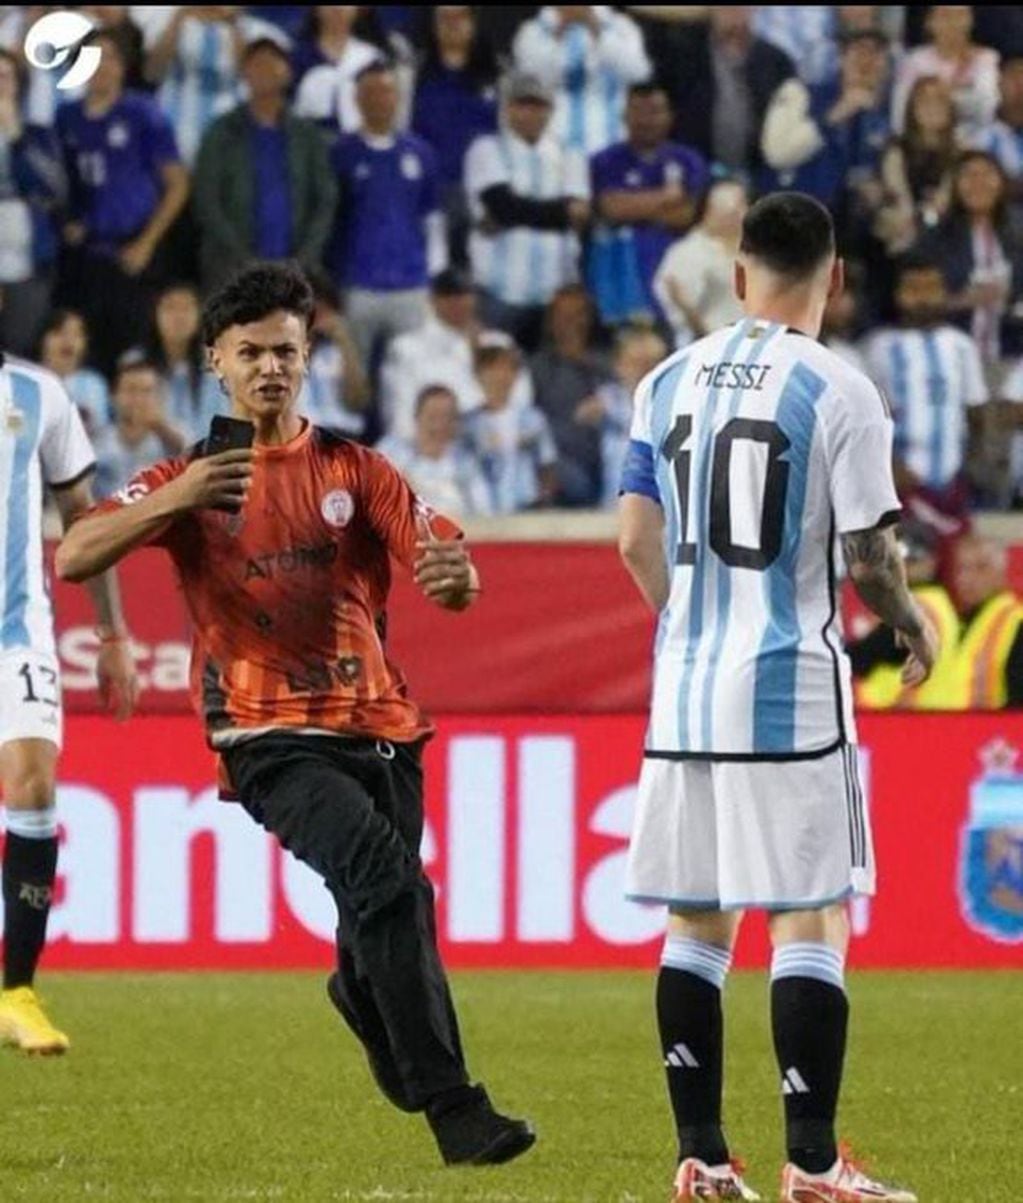 Kenneth Leiva, el hincha de Huracán Las Heras que se metió a la cancha para lograr una foto con Messi. / Twitter